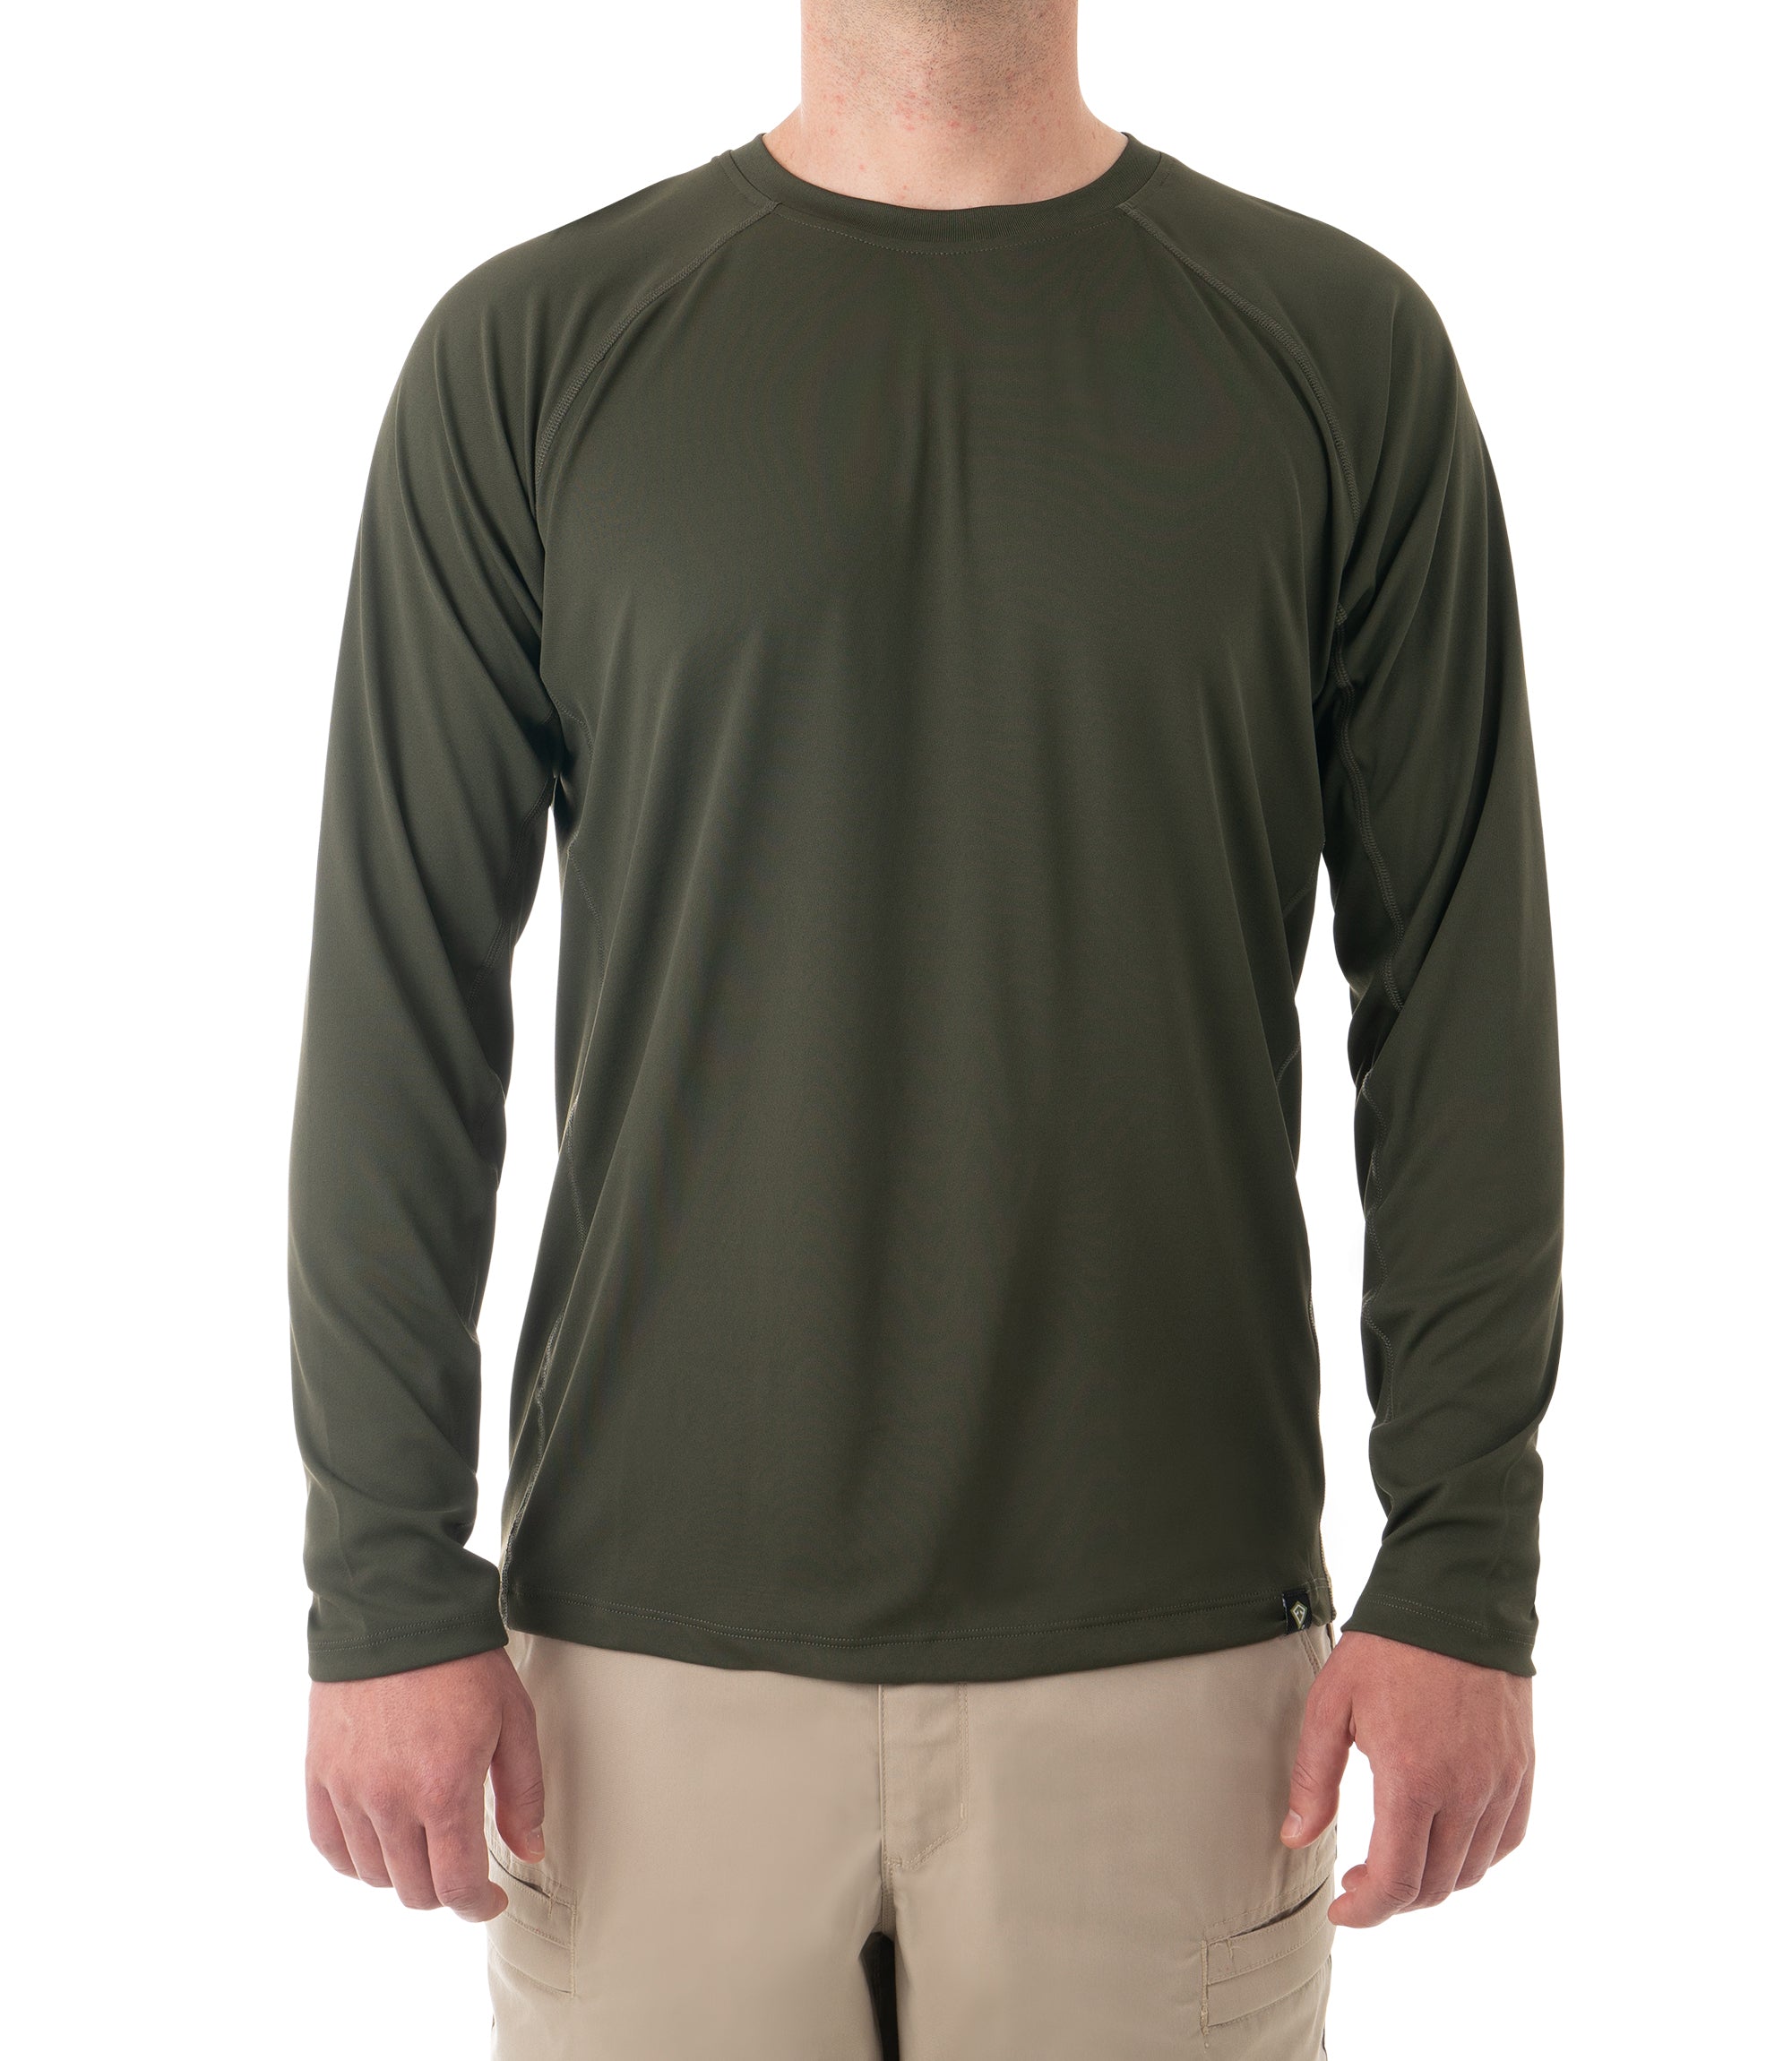 First Tactical Performance Long Sleeve T-Shirt - Men's OD Green Medium 111504-830-M-R